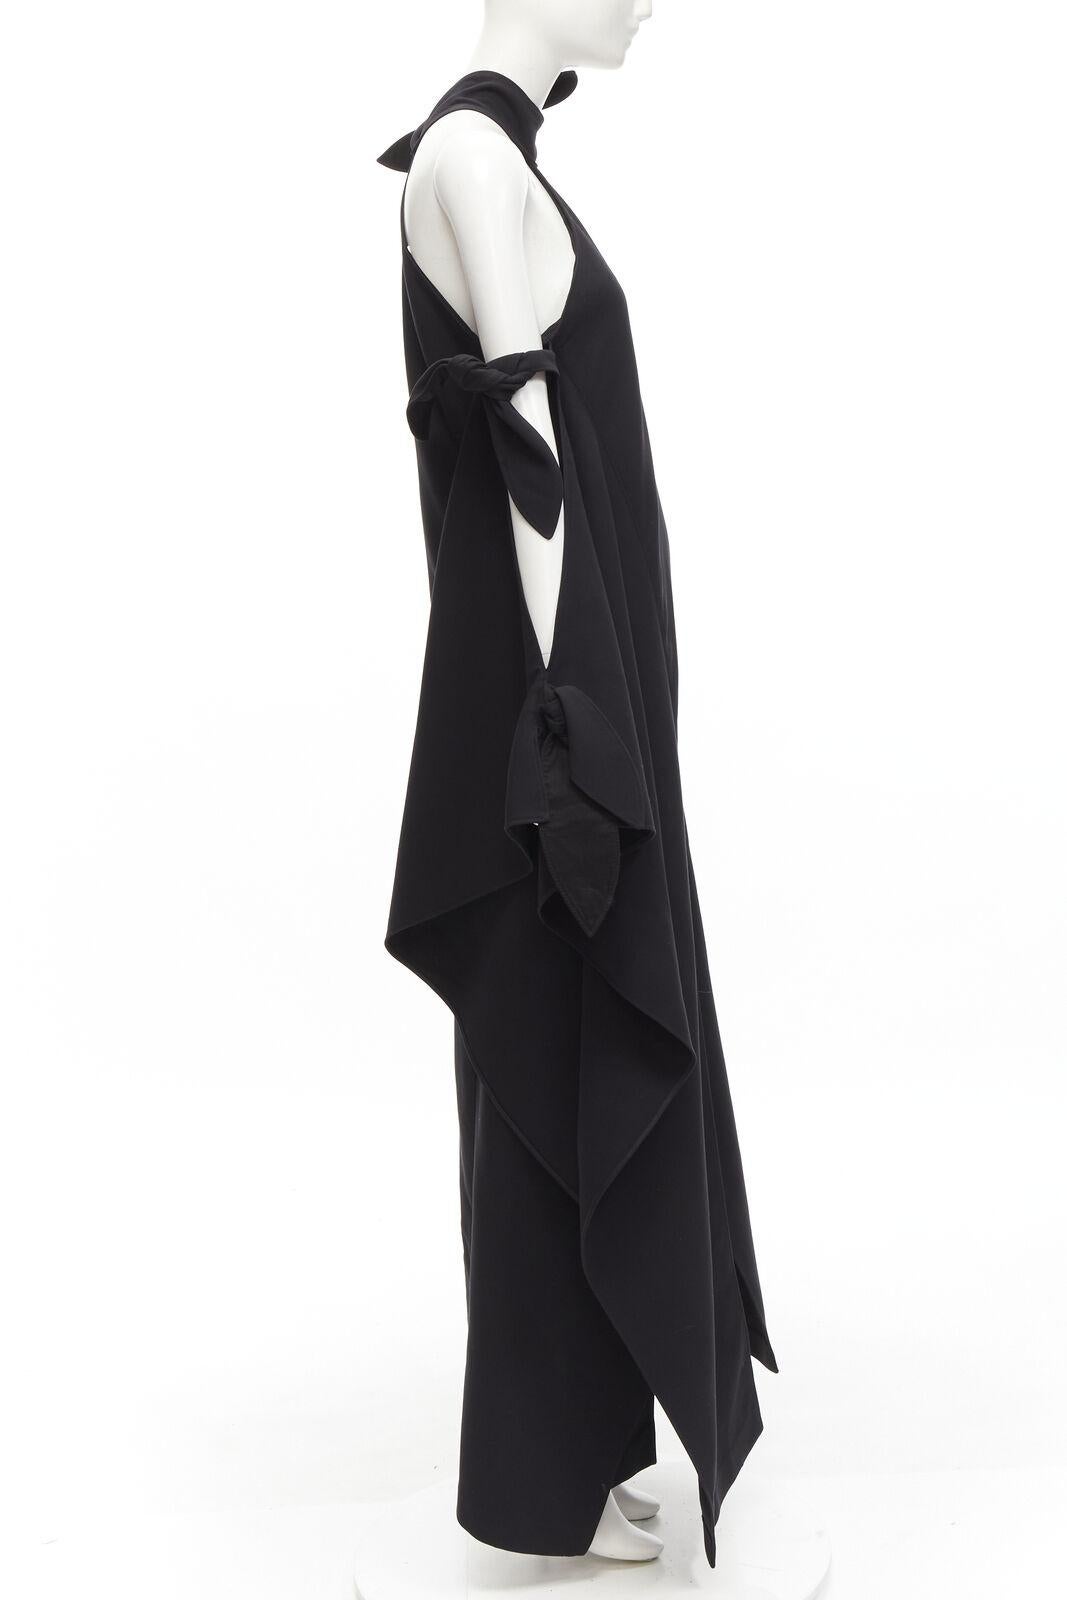 ROSIE ASSOULIN Robe de défilé noire à épaules dénudées et dos nu à fente haute, Taille US2 S, 2015 Excellent état - En vente à Hong Kong, NT